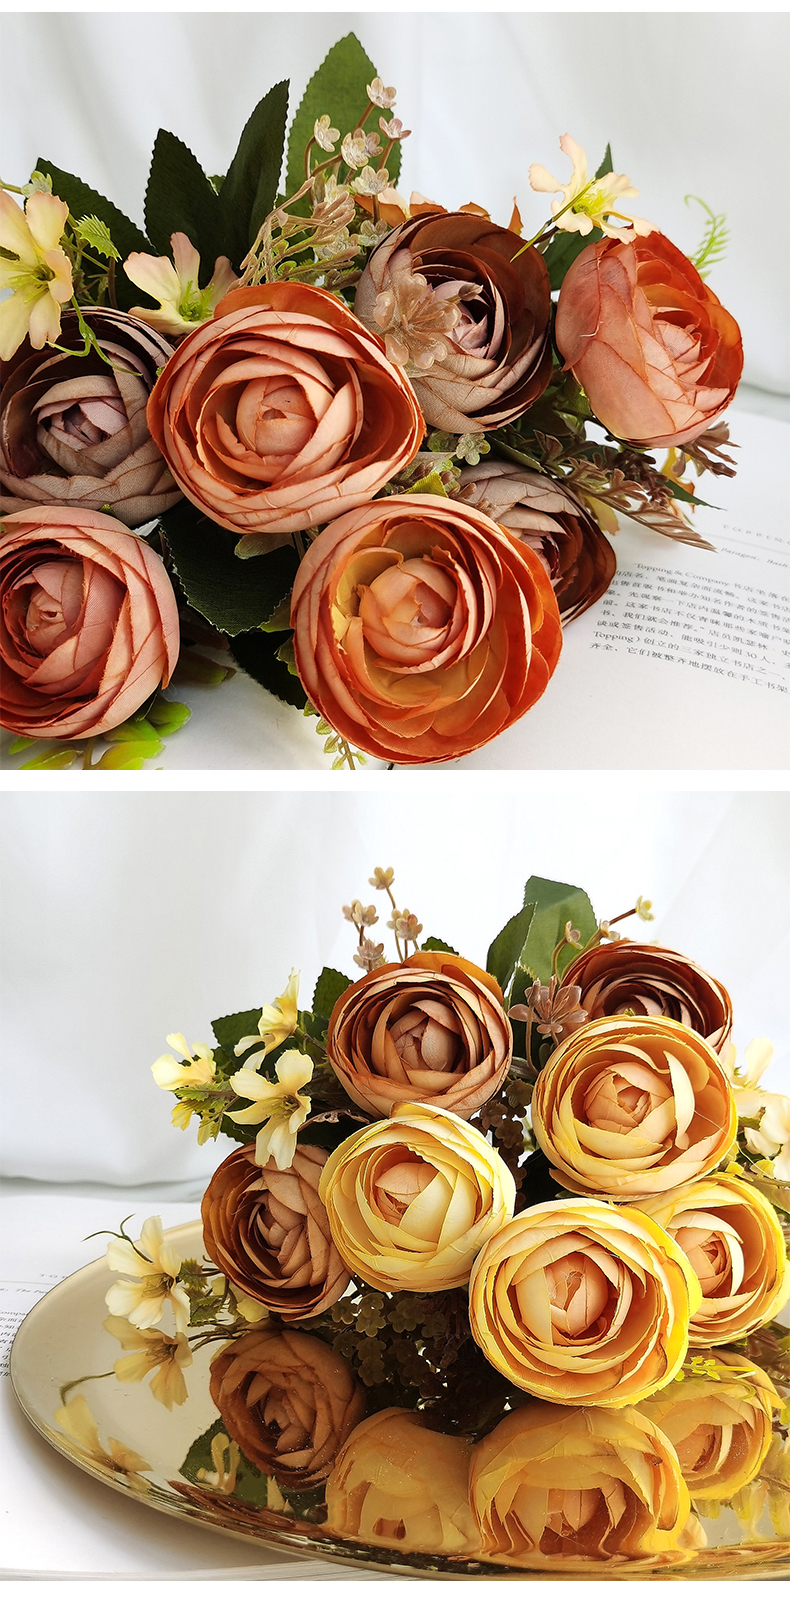 Amazon top seller decorative silk rose flower bouquet wedding supplies artificial flowers bunch